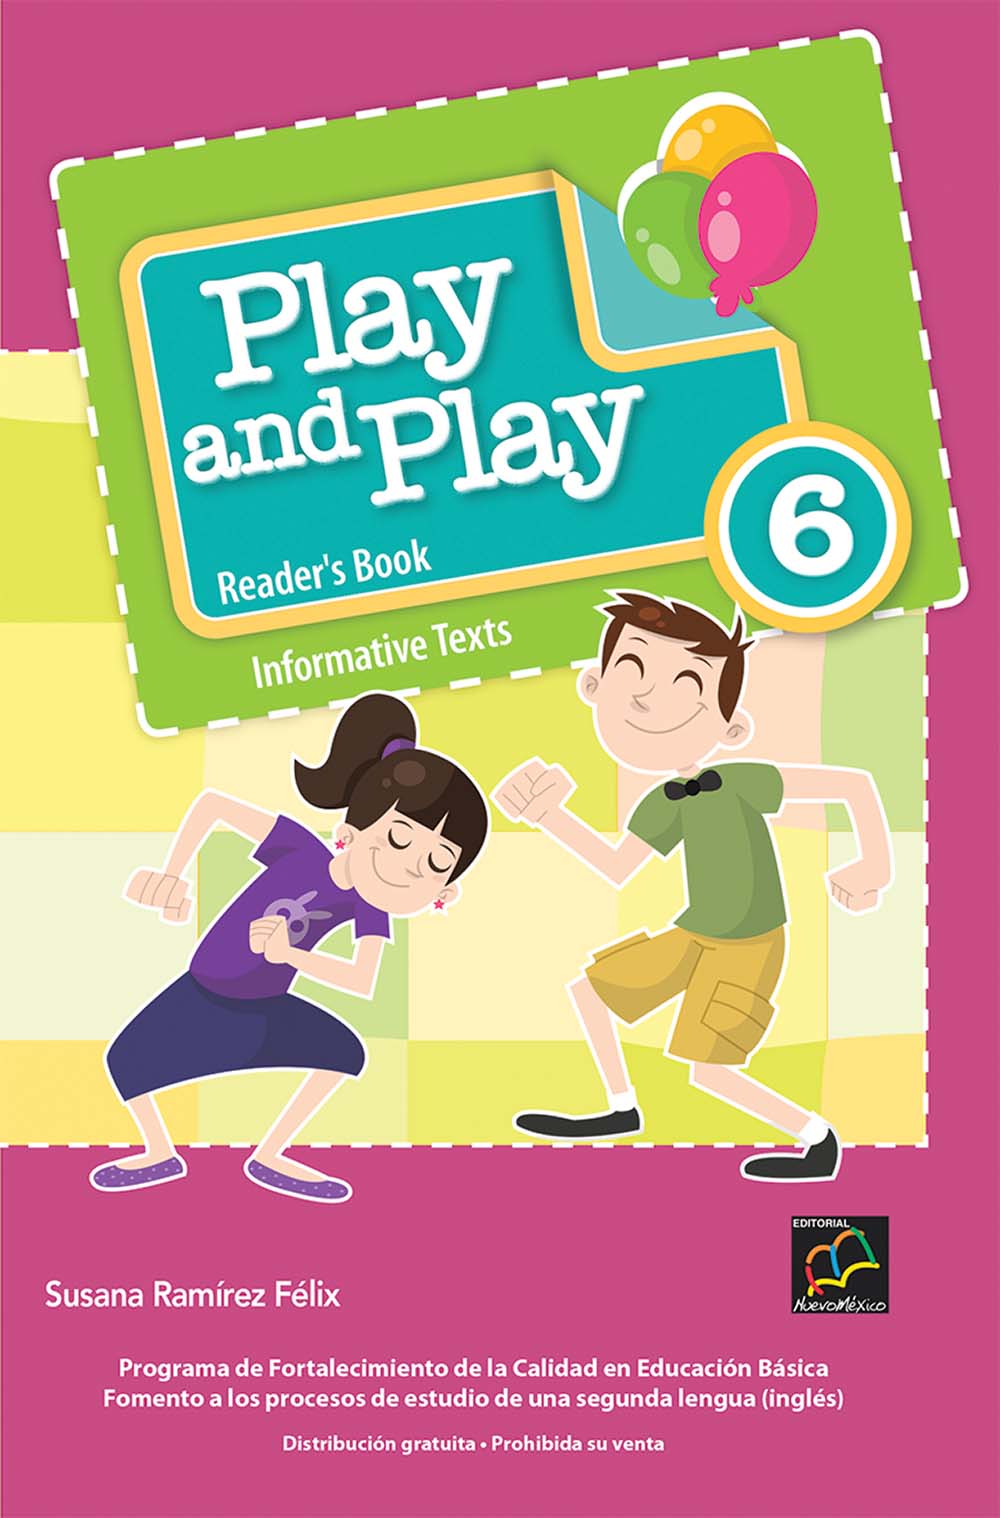 Play and Play 6 Libro de Lectura, Editorial: Nuevo México, Nivel: Primaria, Grado: 6